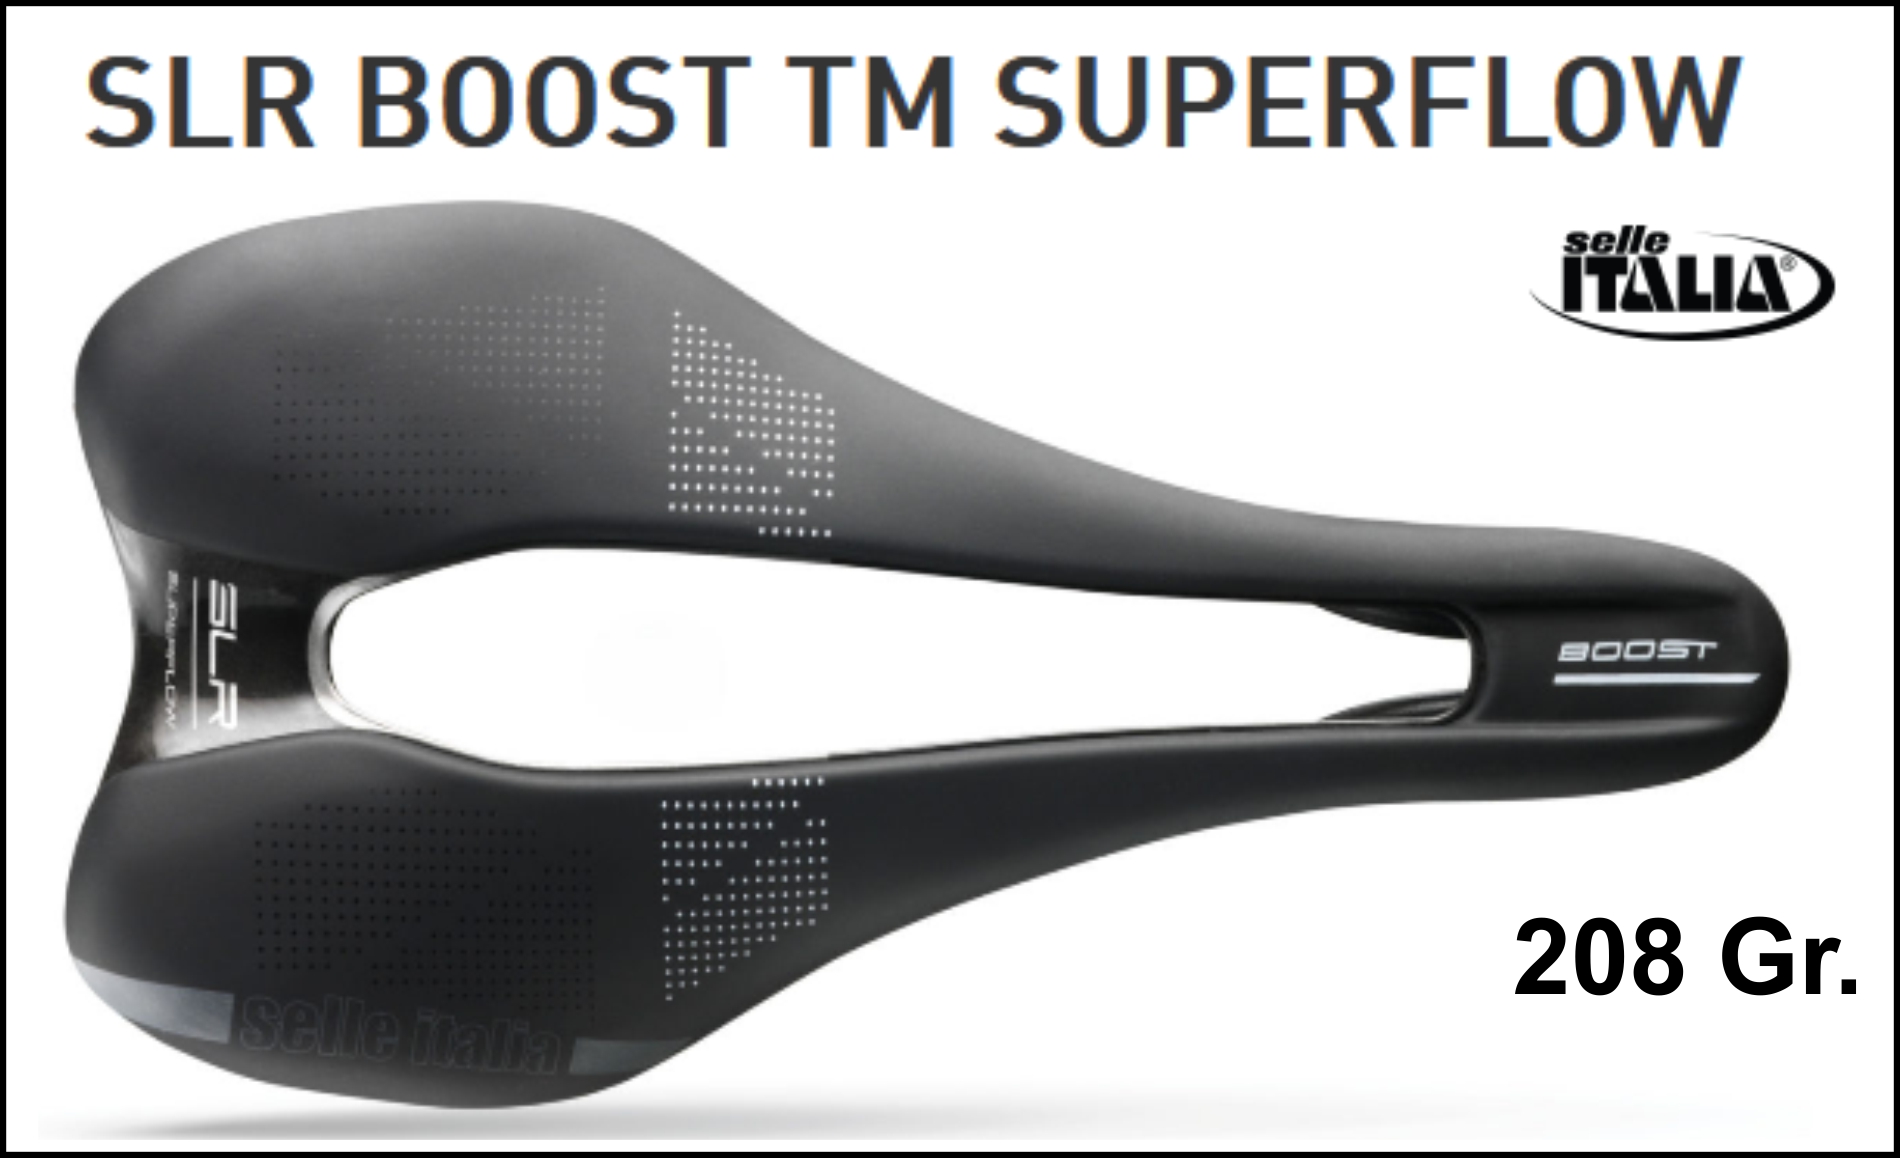 Selle Italia SLR Boost TM Superflow